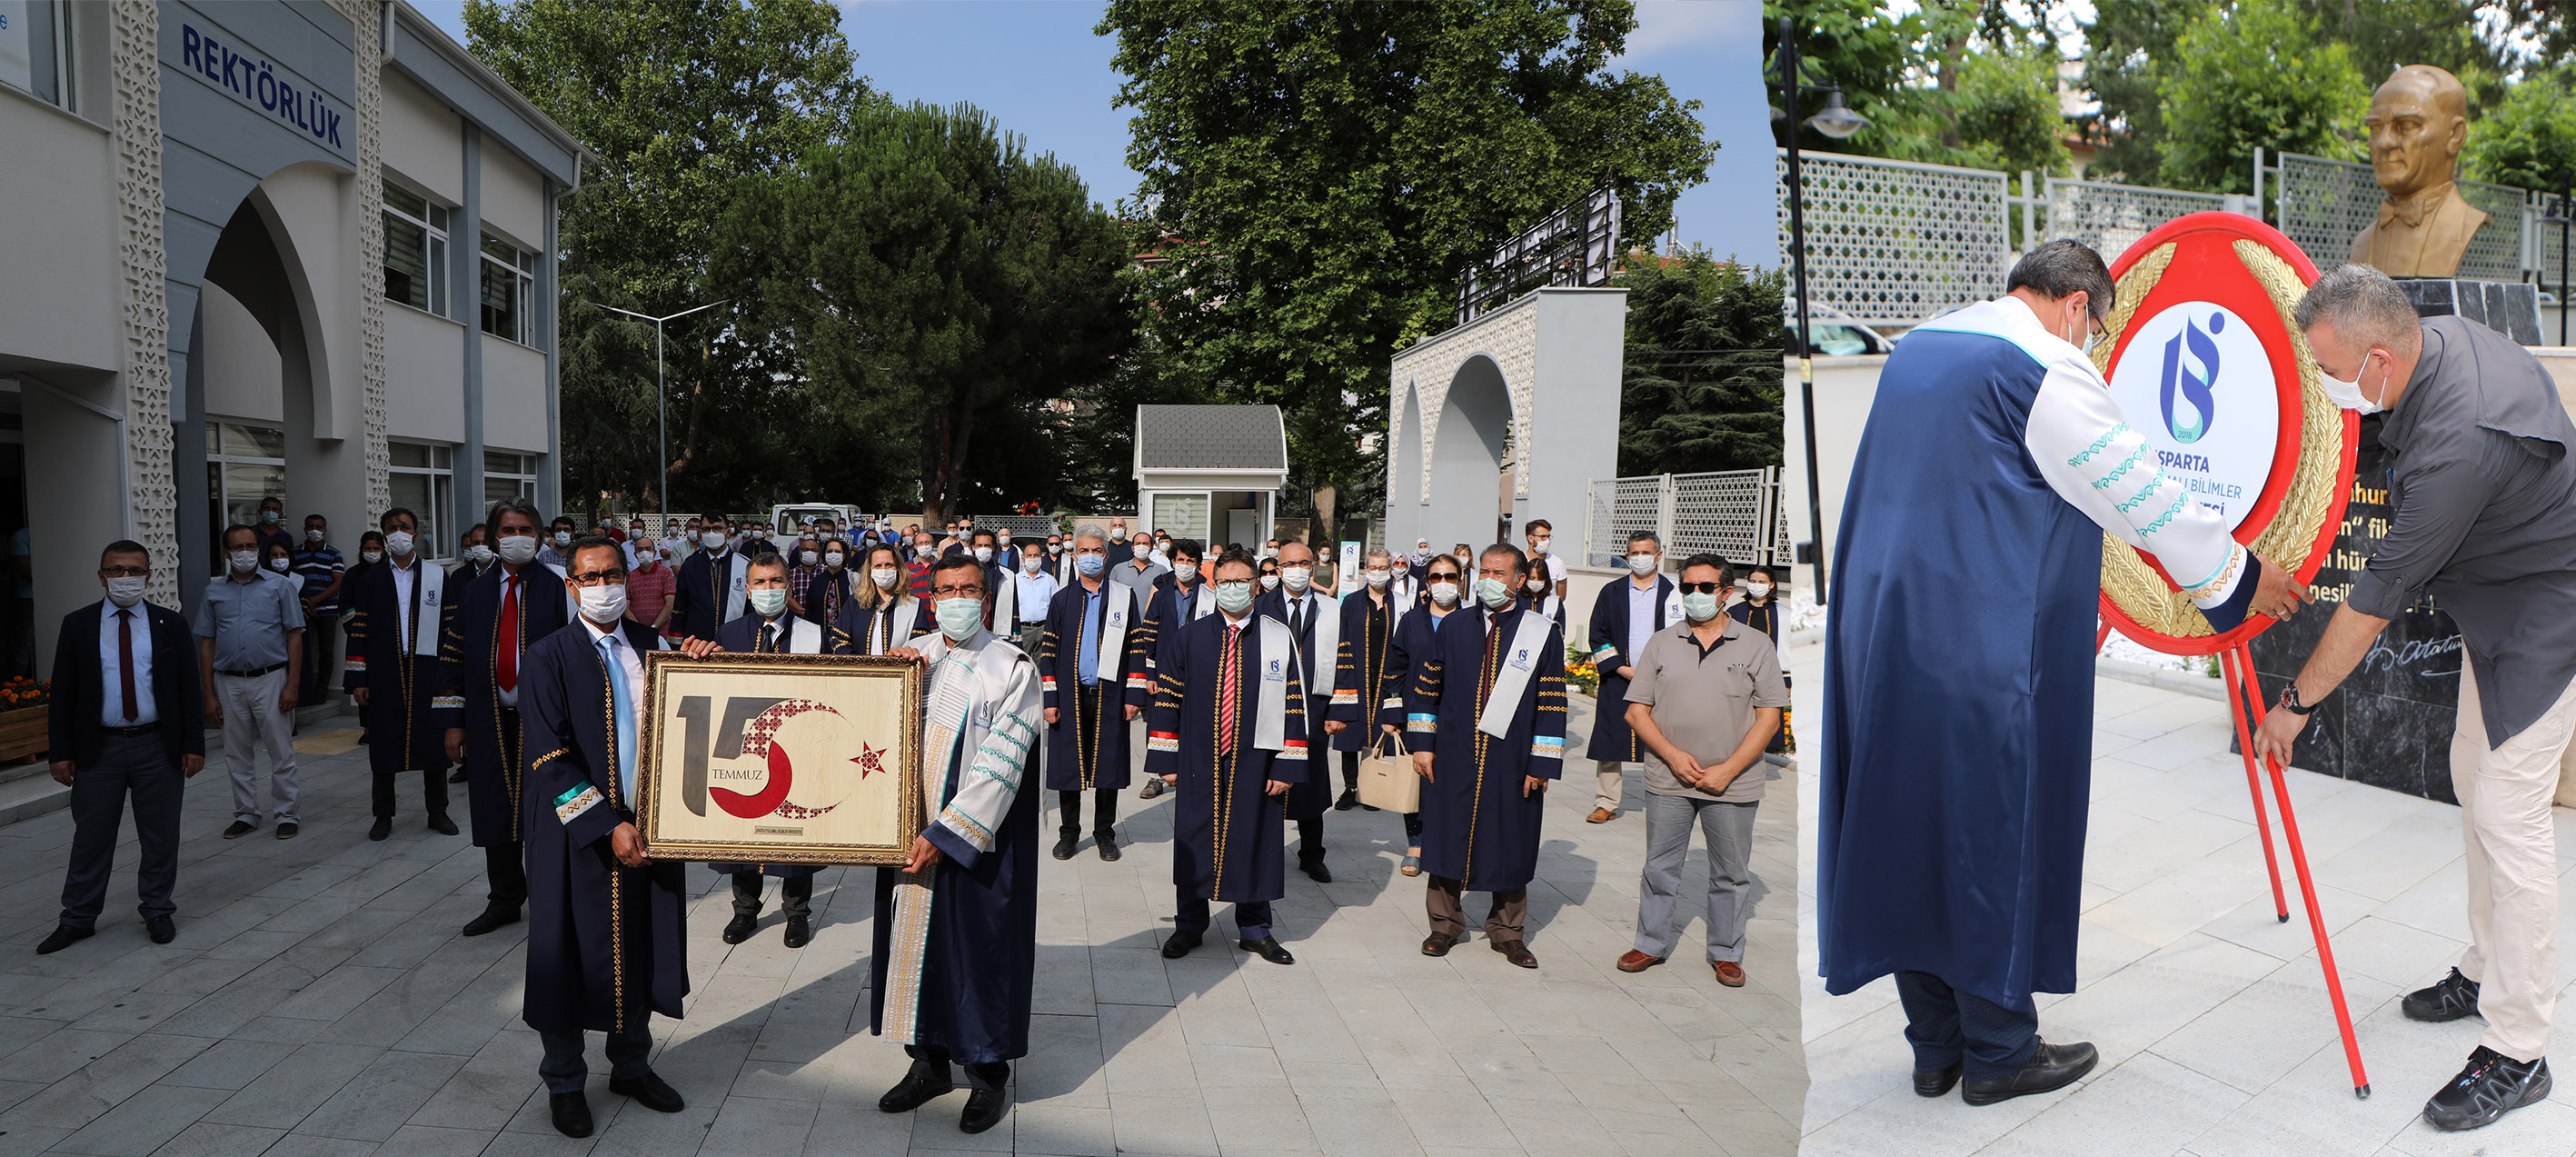 ISUBÜ’de 15 Temmuz Anısına Çelenk Koyma Töreni Gerçekleştirildi